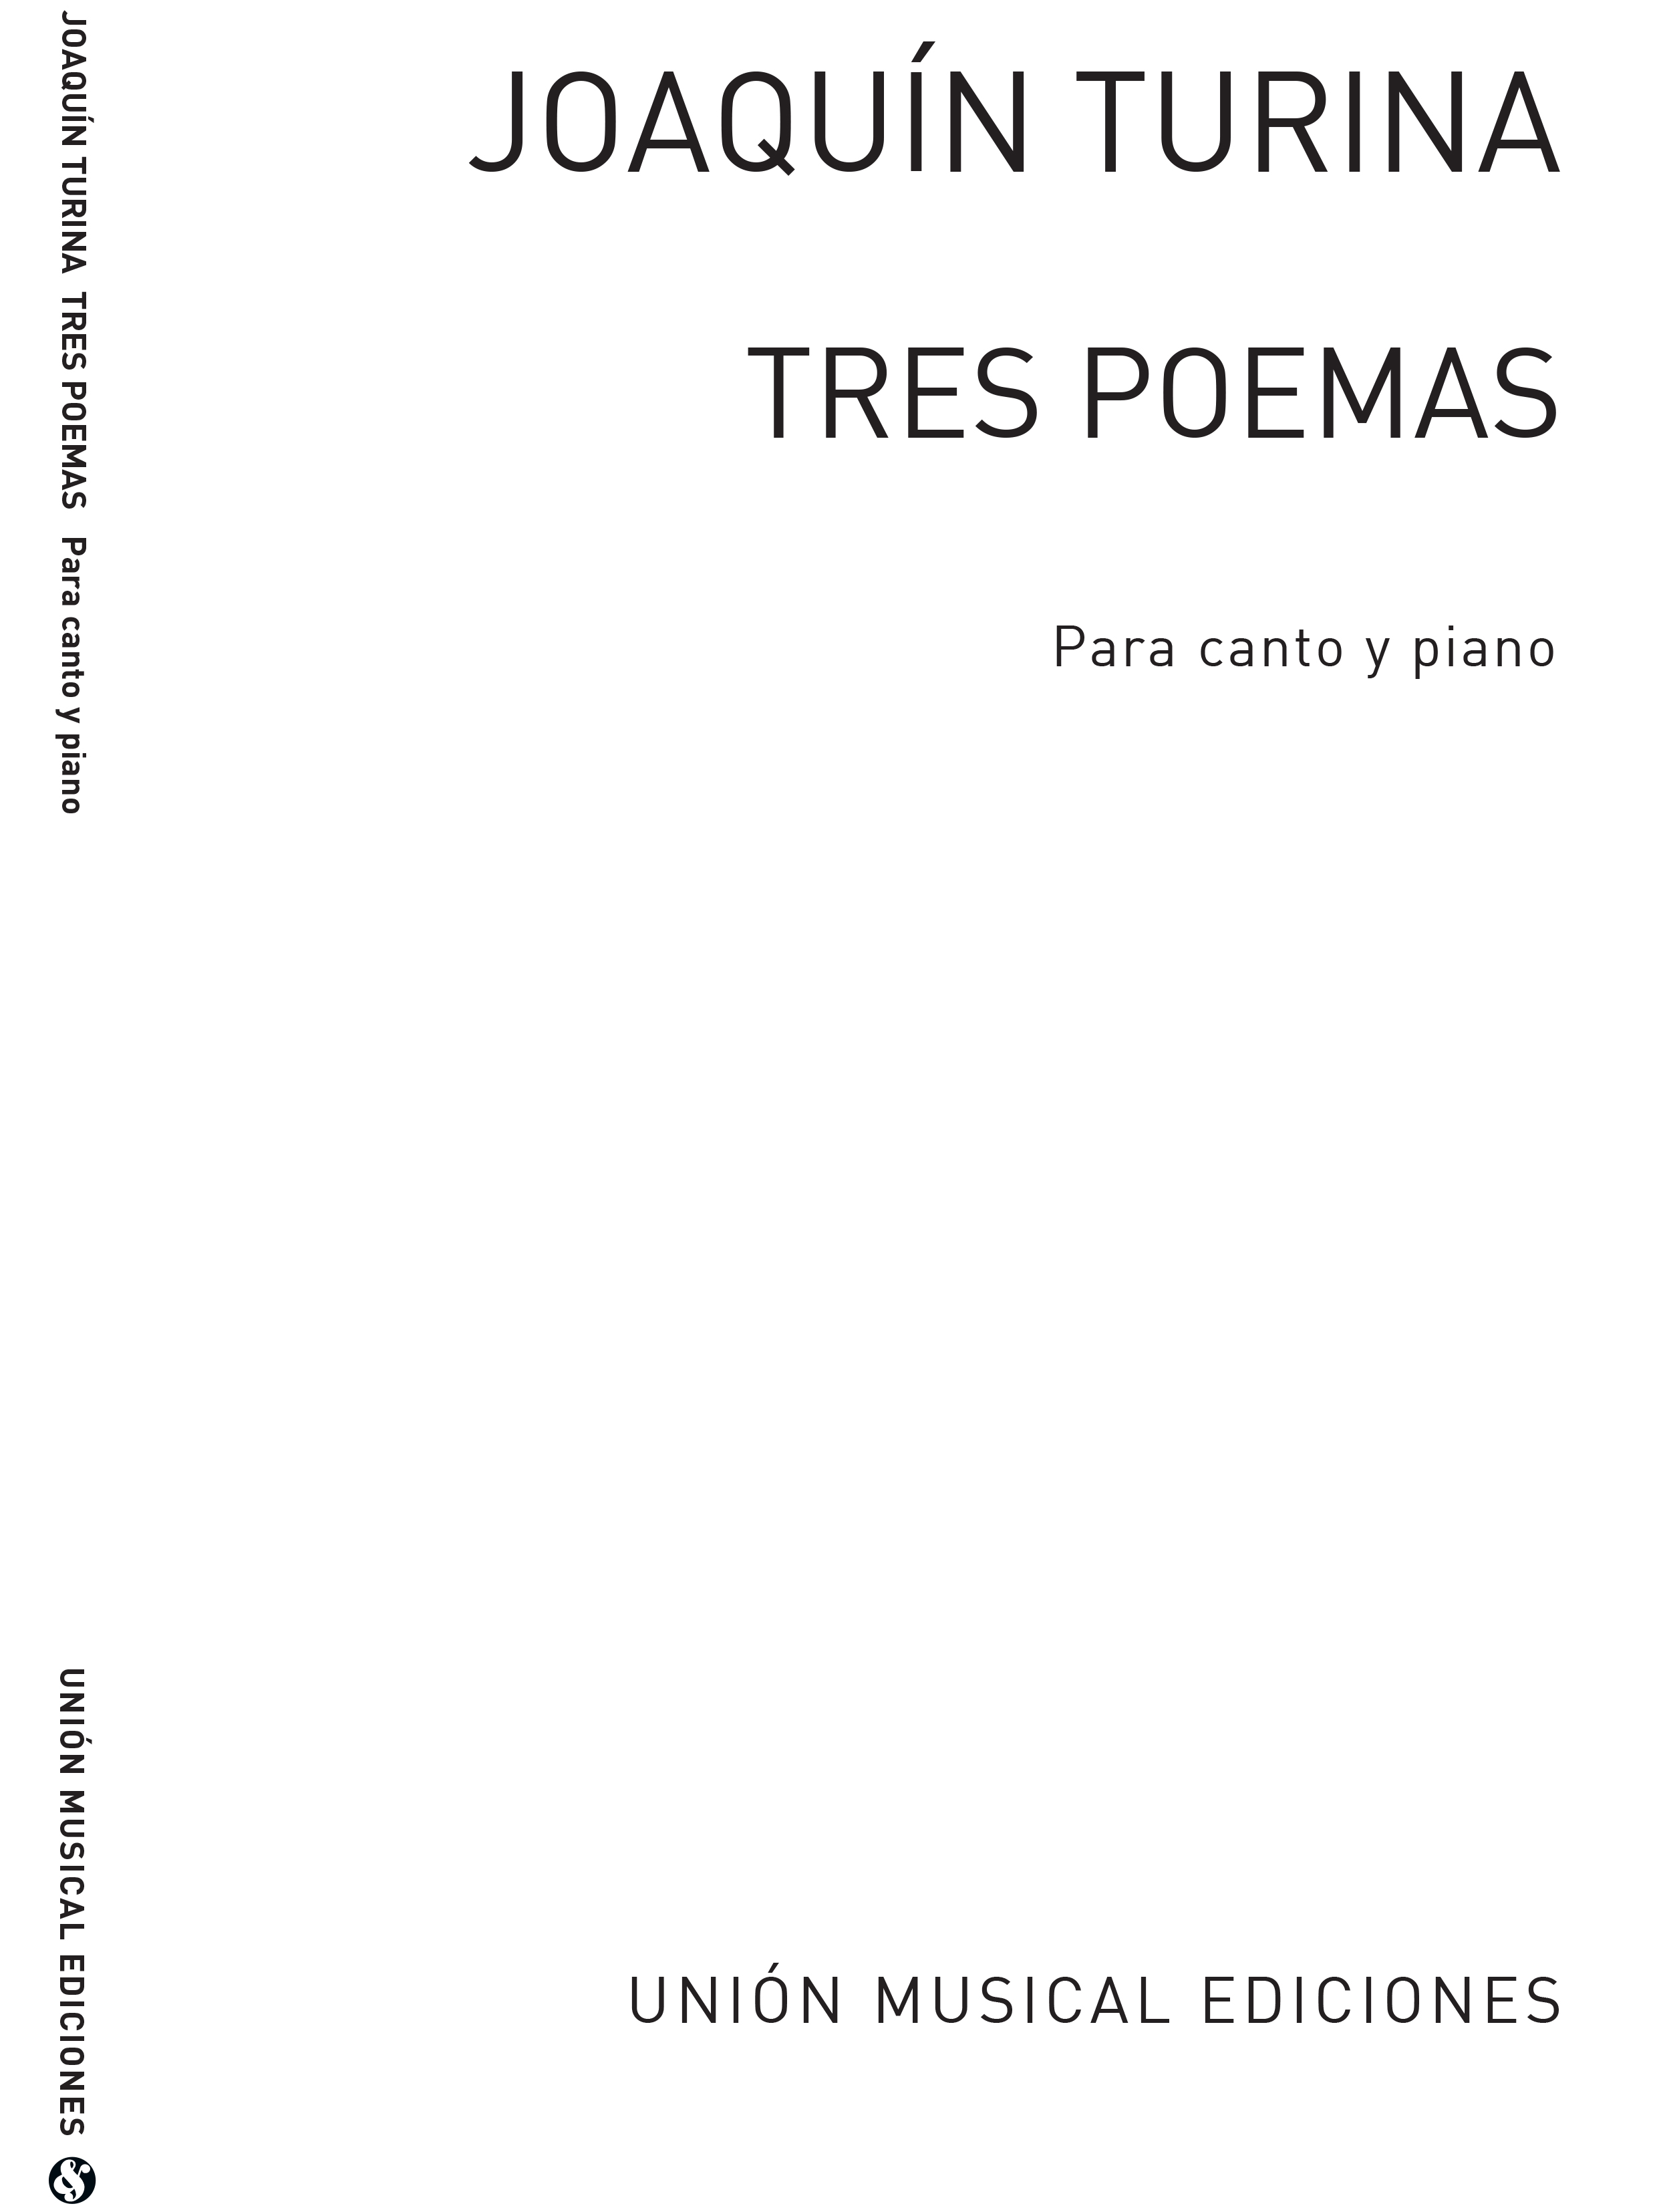 Joaquín Turina: Joaquin Turina: Tres Poemas Op.81: Voice: Mixed Songbook